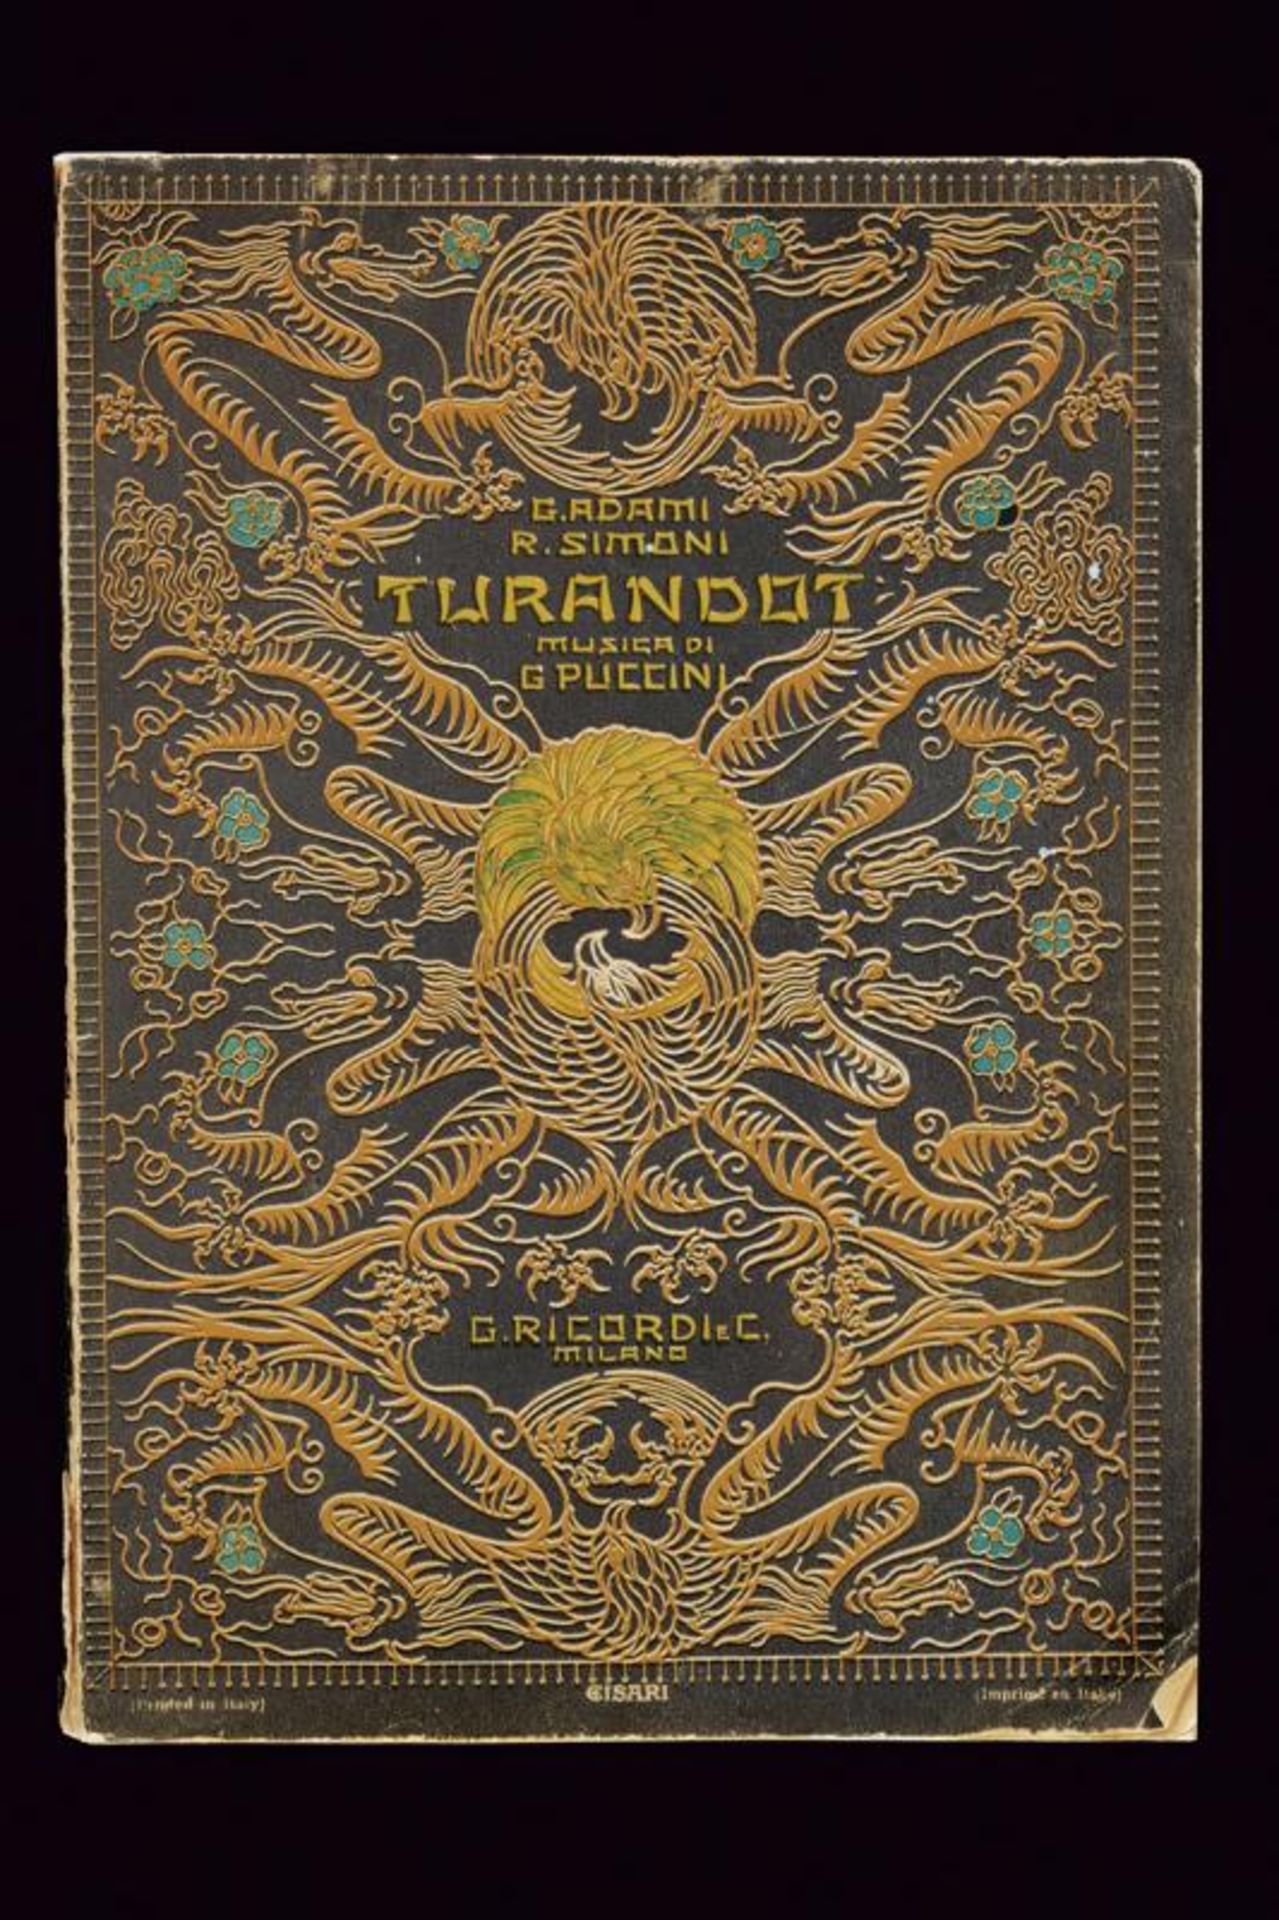 Toscanini, Arturo - Libretto of Puccini's Turandot